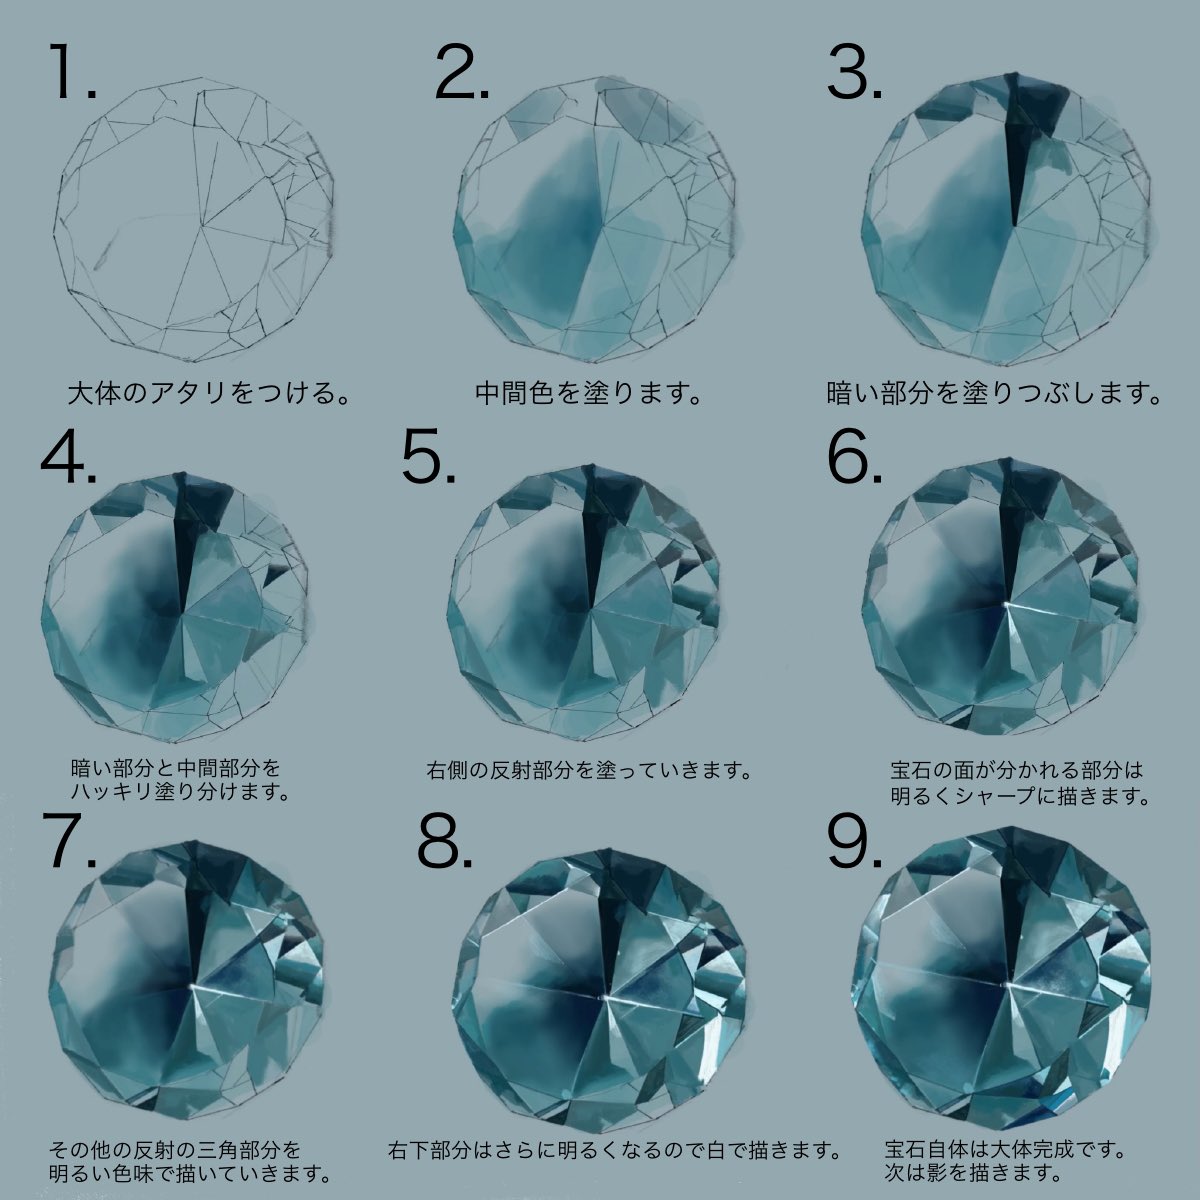 青ヰ 鱗 Aoi Uroko 宝石の塗り方 T Co 3v2ti6ftbt Twitter